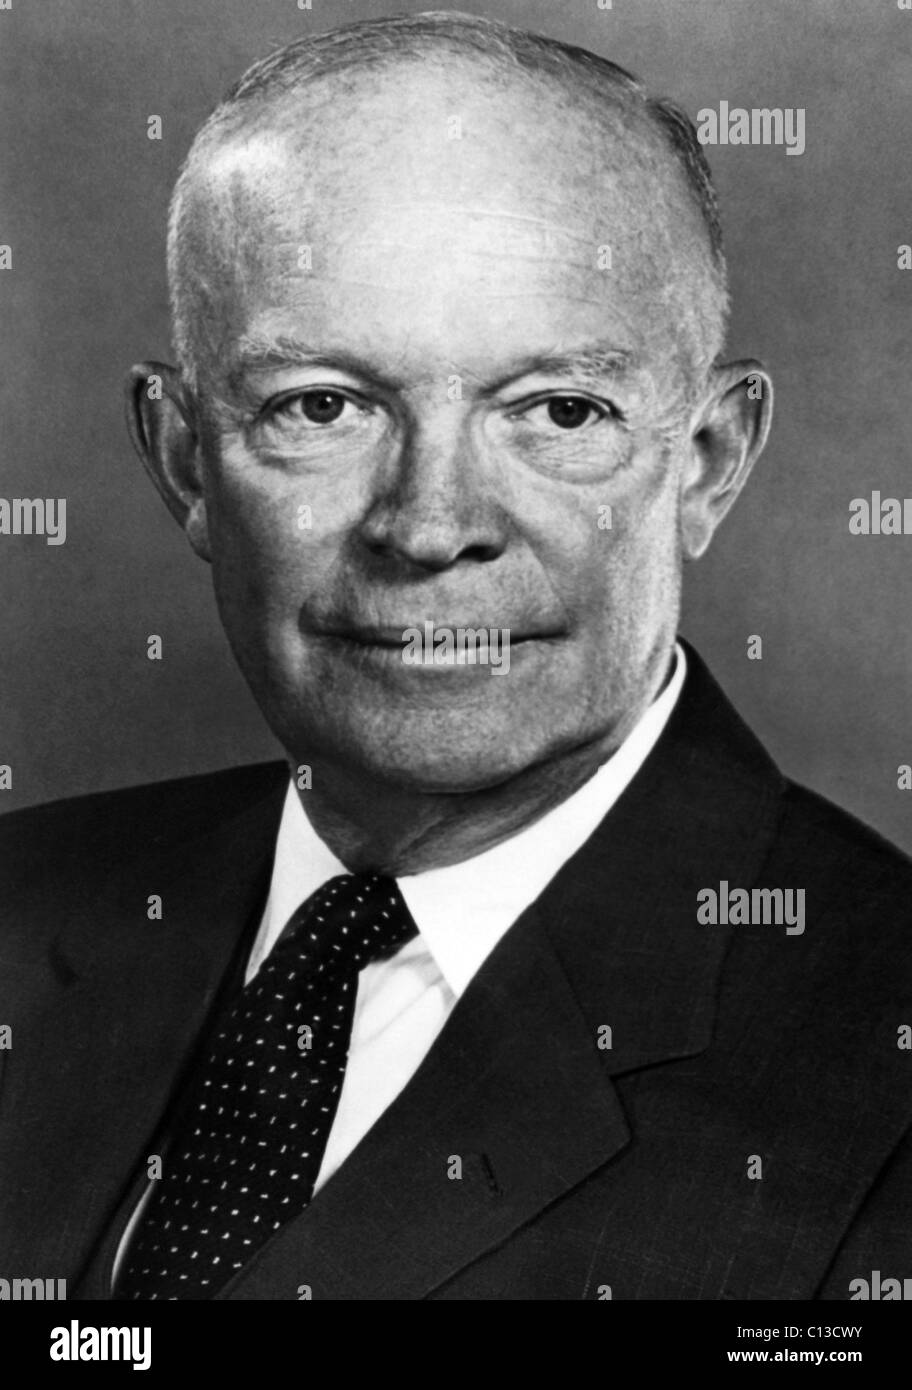 President Dwight D. Eisenhower, 1950s Stock Photo